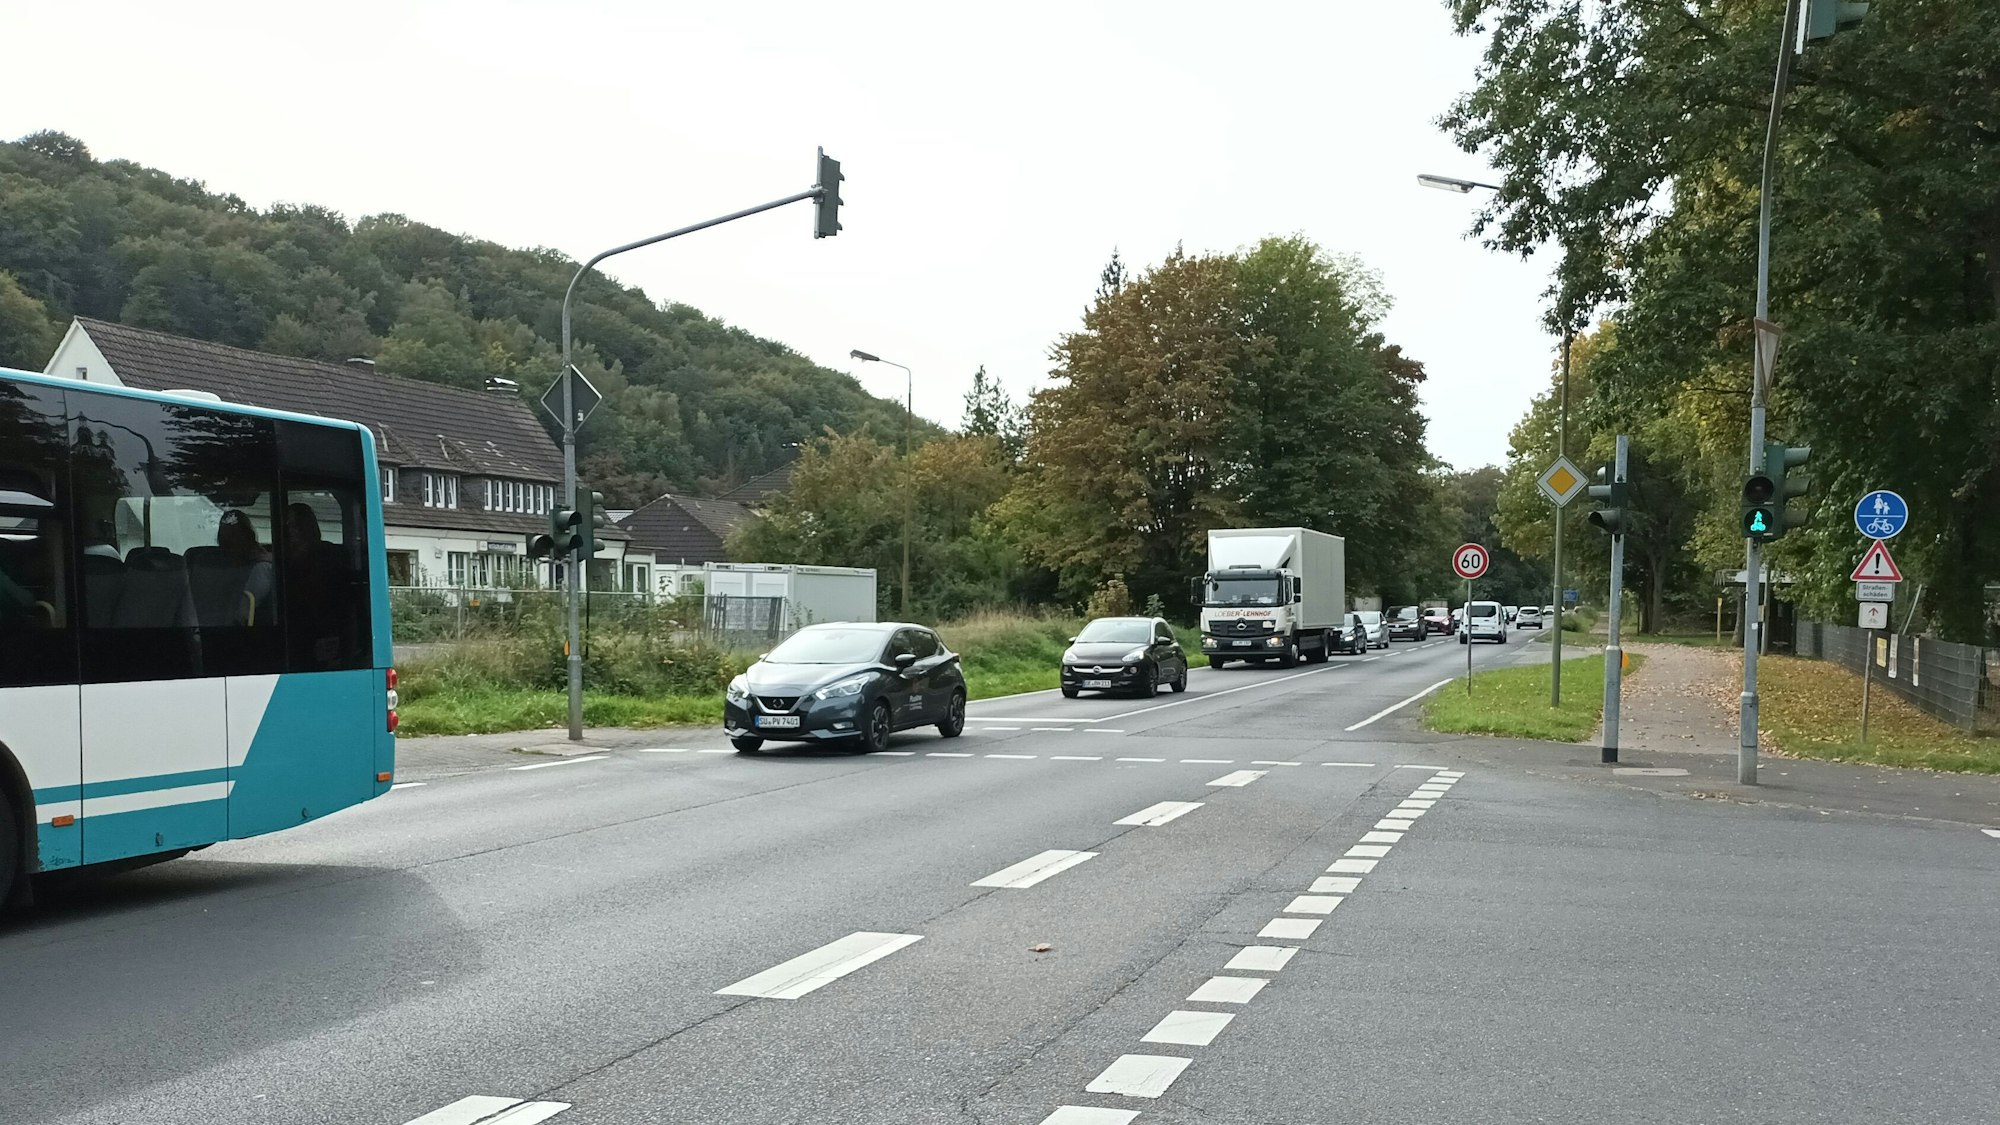 Breite Straße und Kreuzung mit Autos, Lkw und Bus